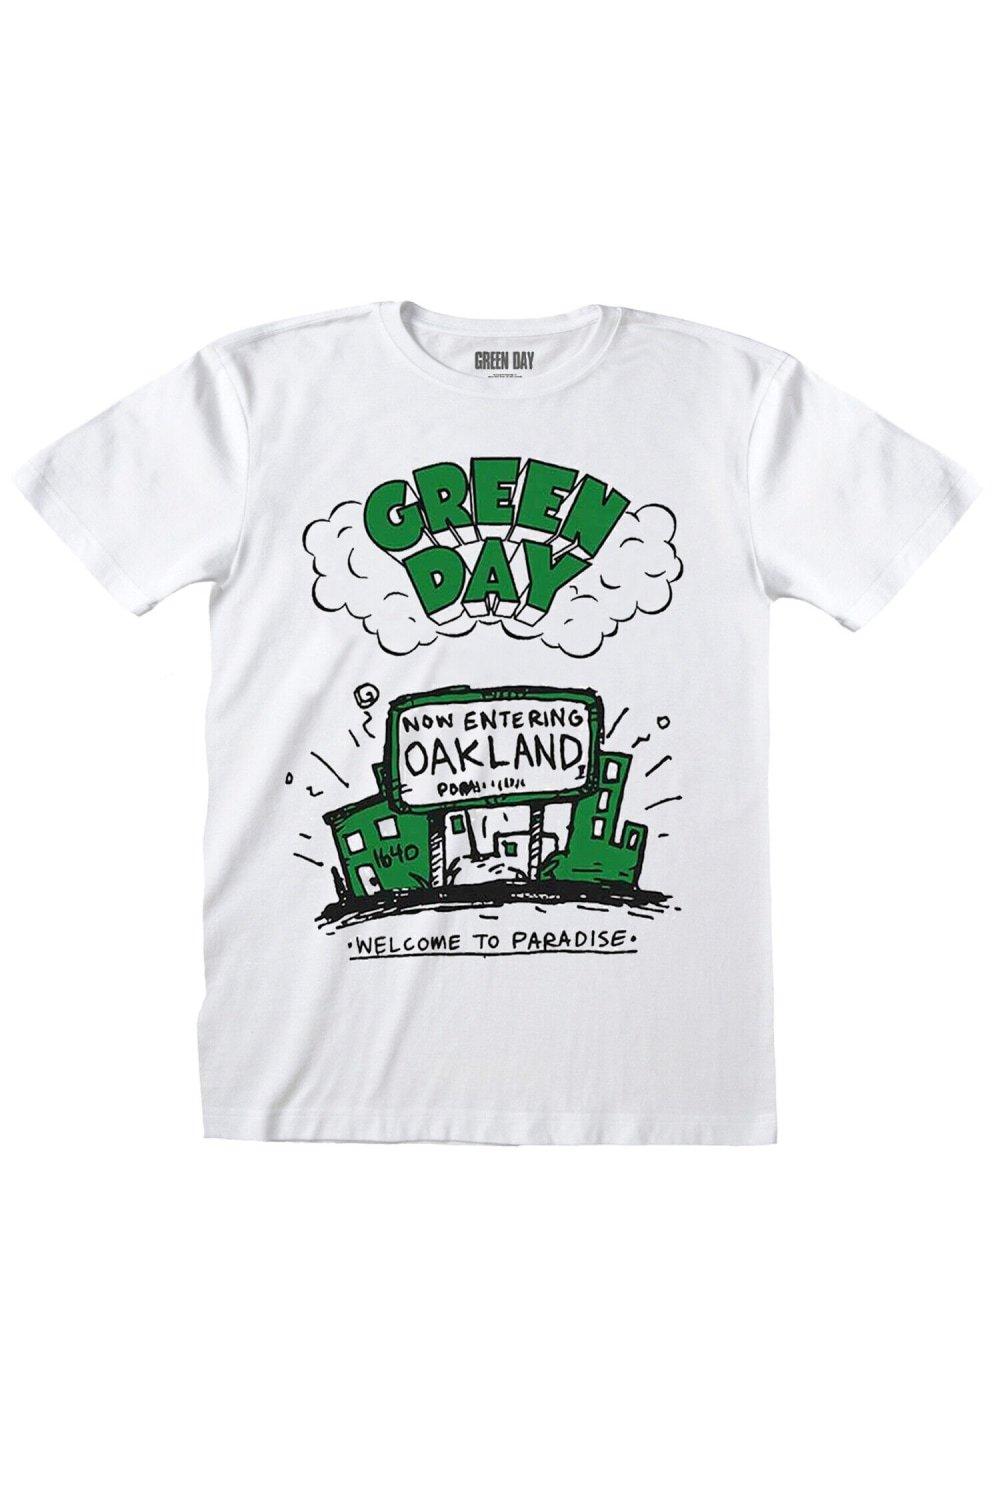 патрик лора добро пожаловать в рай Хлопковая футболка «Добро пожаловать в рай» Green Day, белый